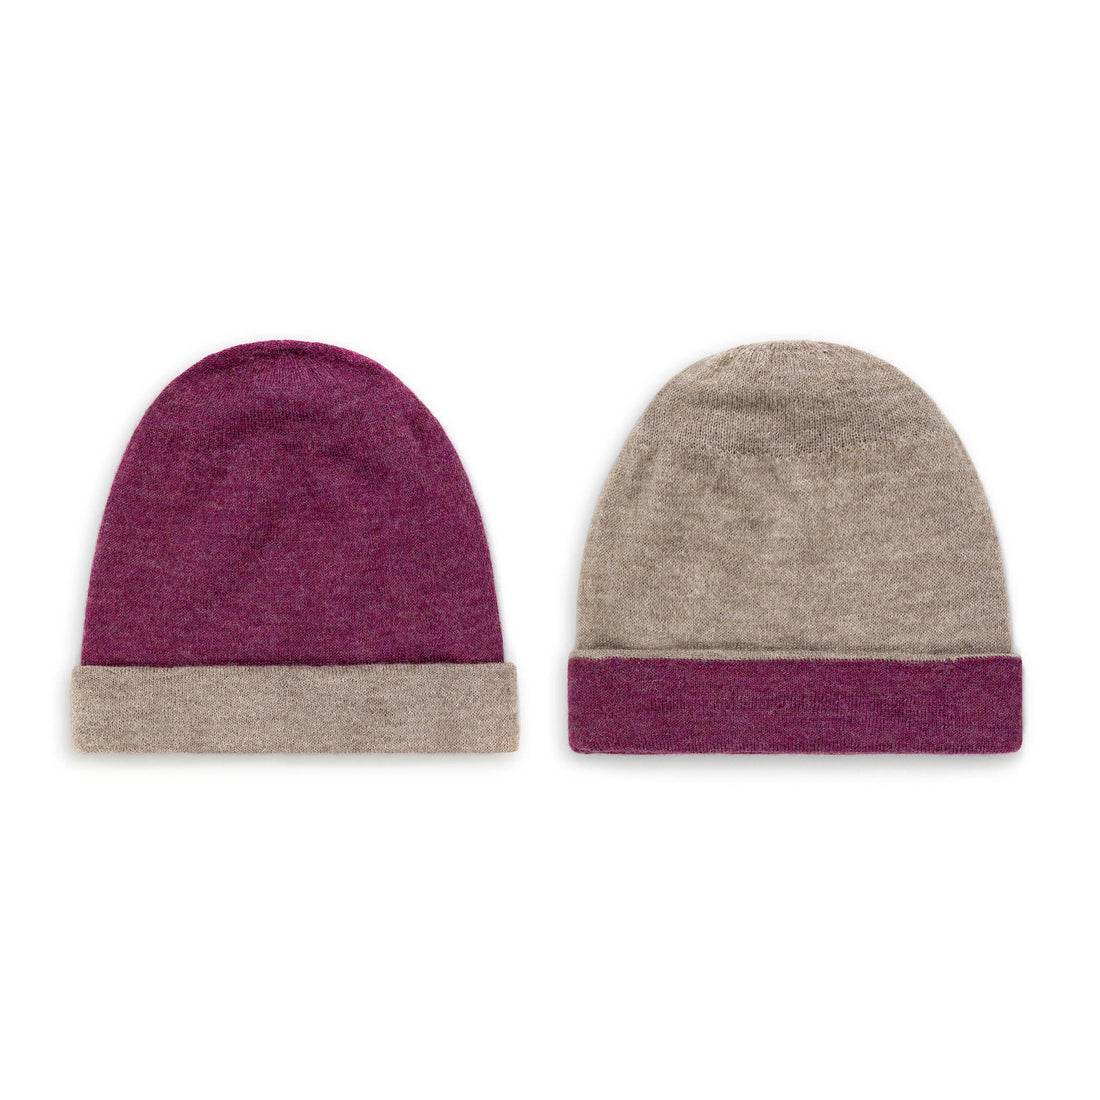 Alpaka Mütze Duocolor für Damen und Herren von Alpakin in purpur und grau sowie grau und purpur